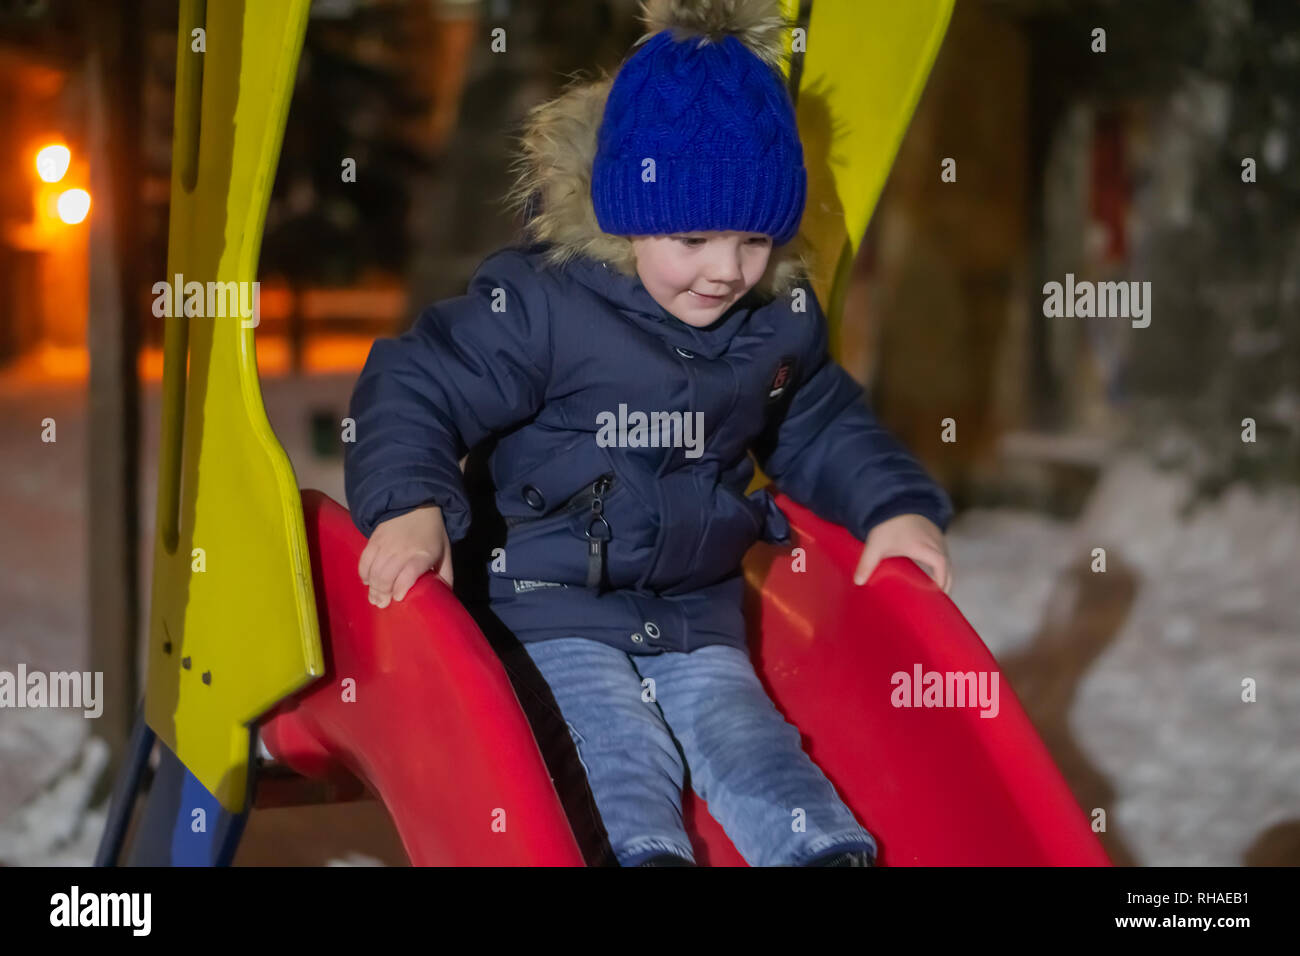 Un garçon de trois ans qui dans la vie de tous les jours des vêtements d'hiver est de descendre une colline. Il est heureux et aime jouer dans le froid. Banque D'Images